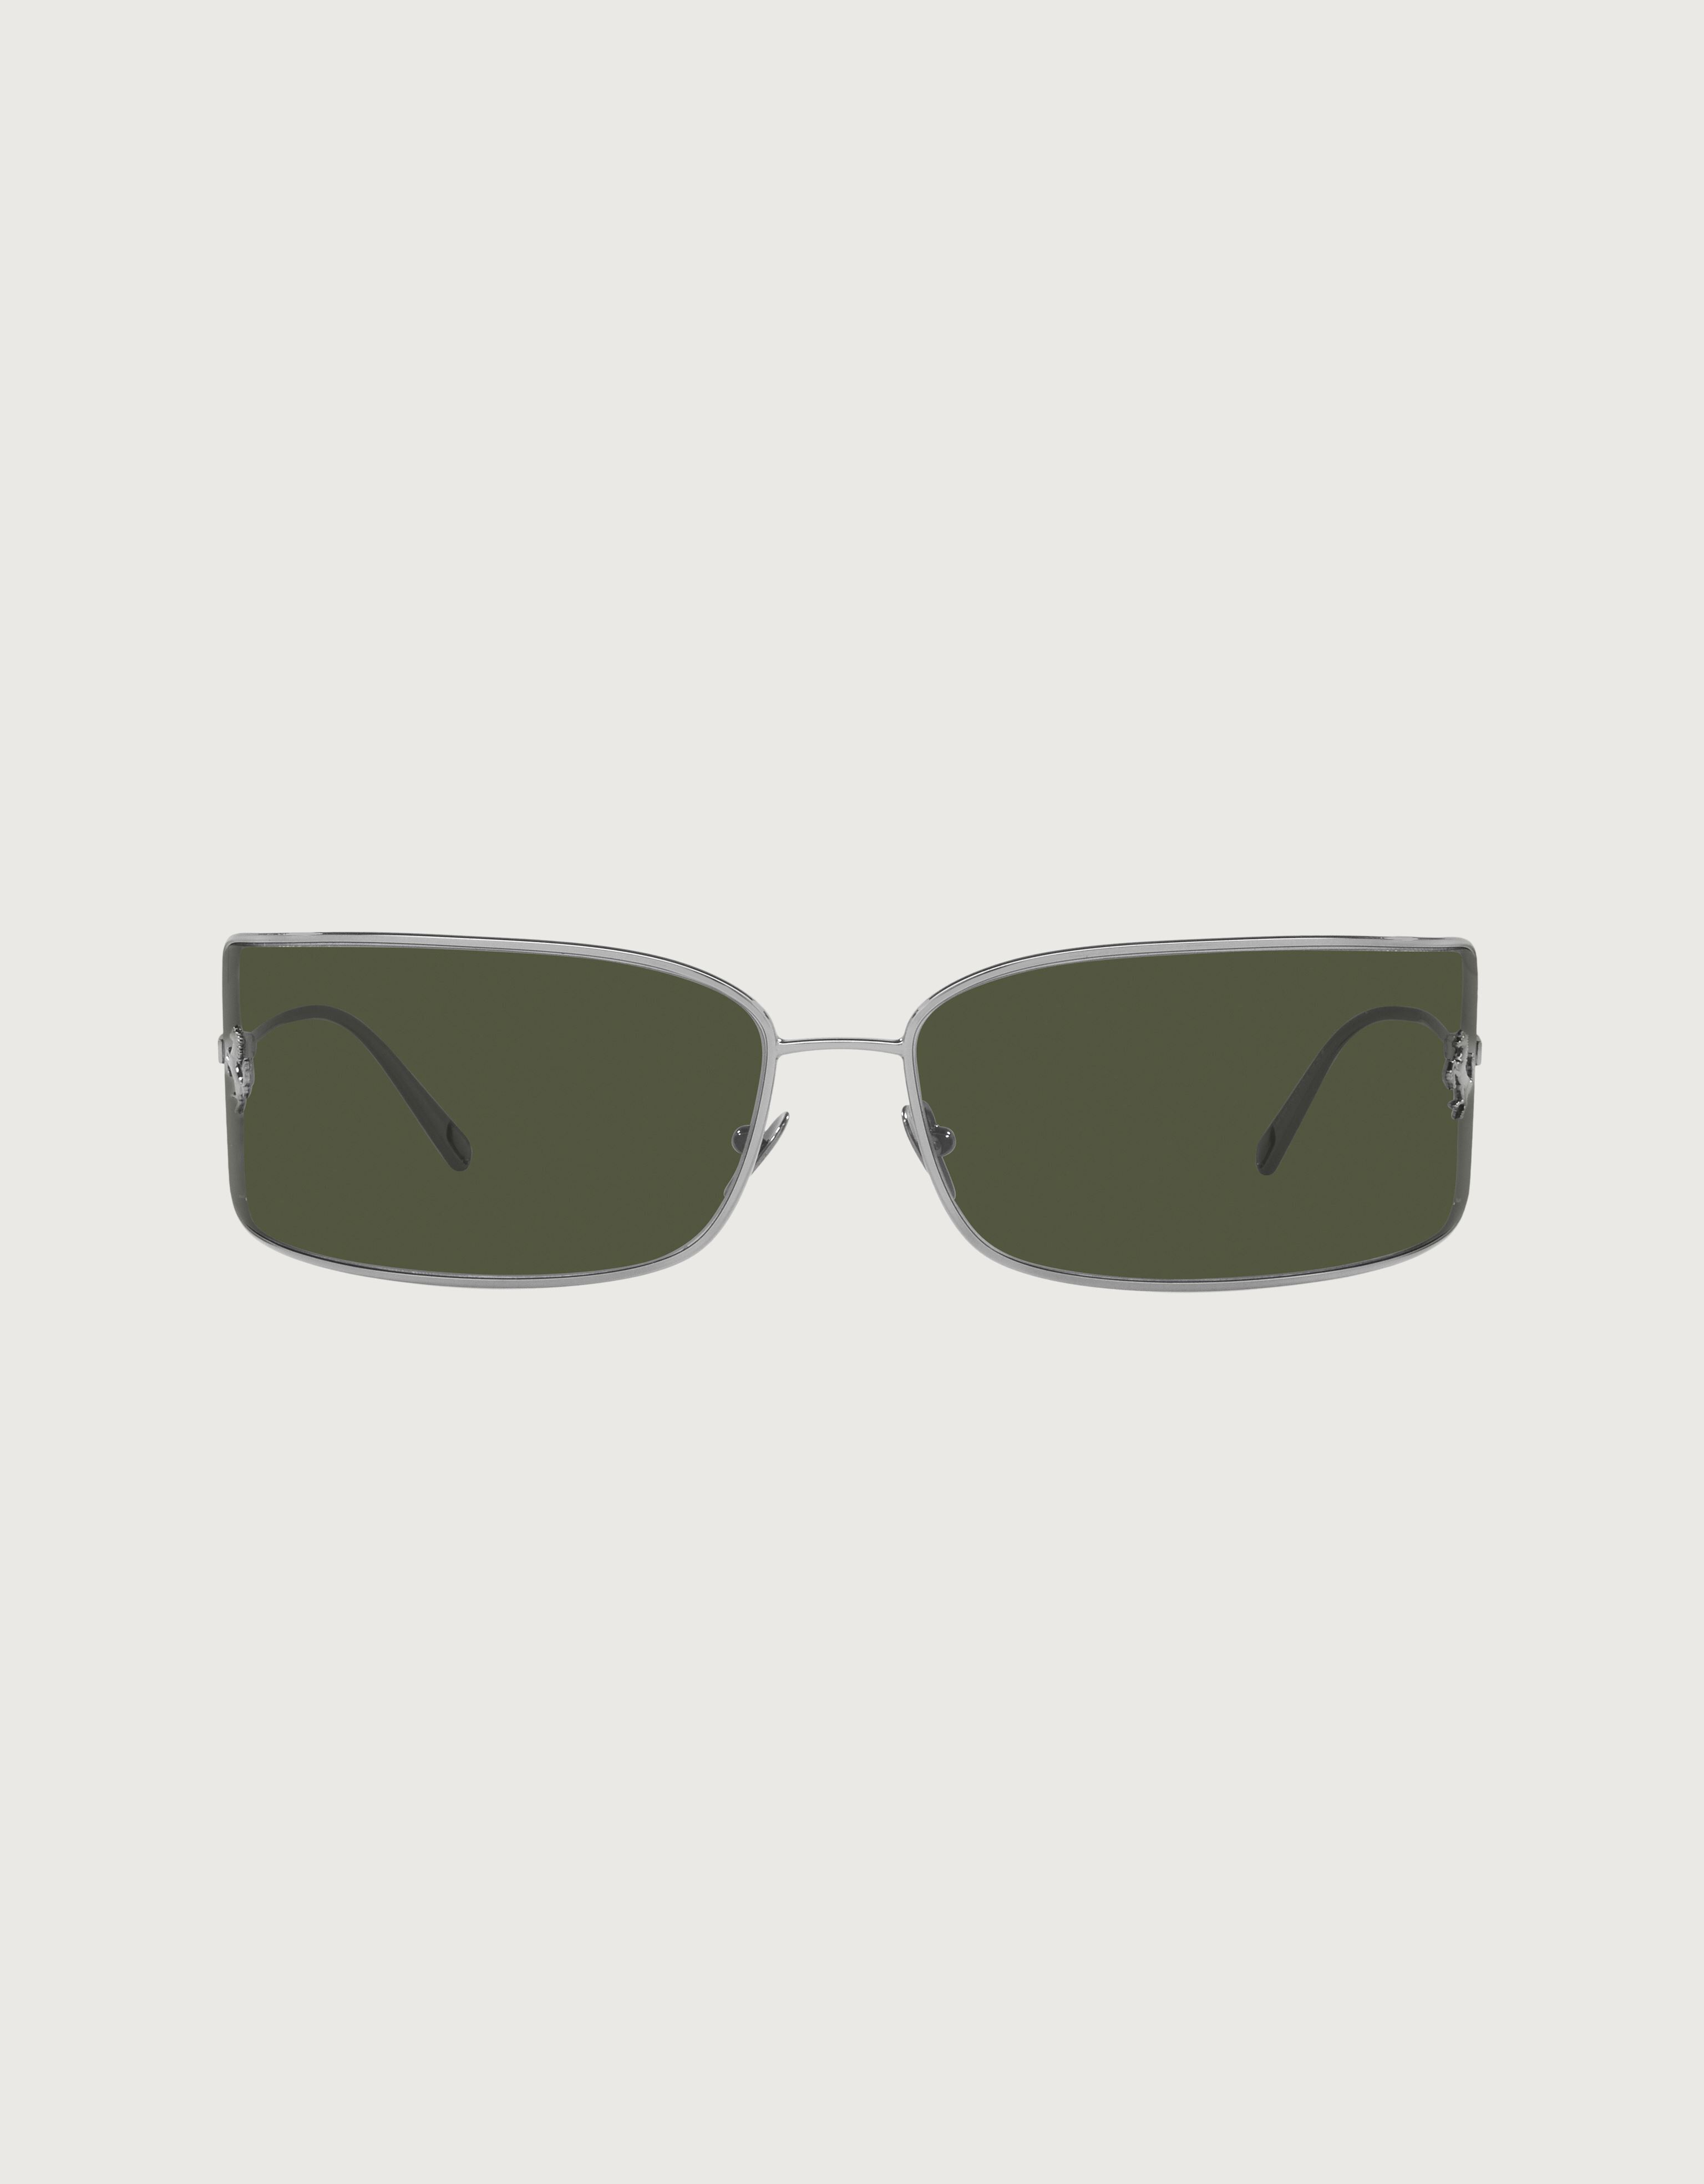 Ferrari Ferrari shield sunglasses with green lenses Silver F1248f